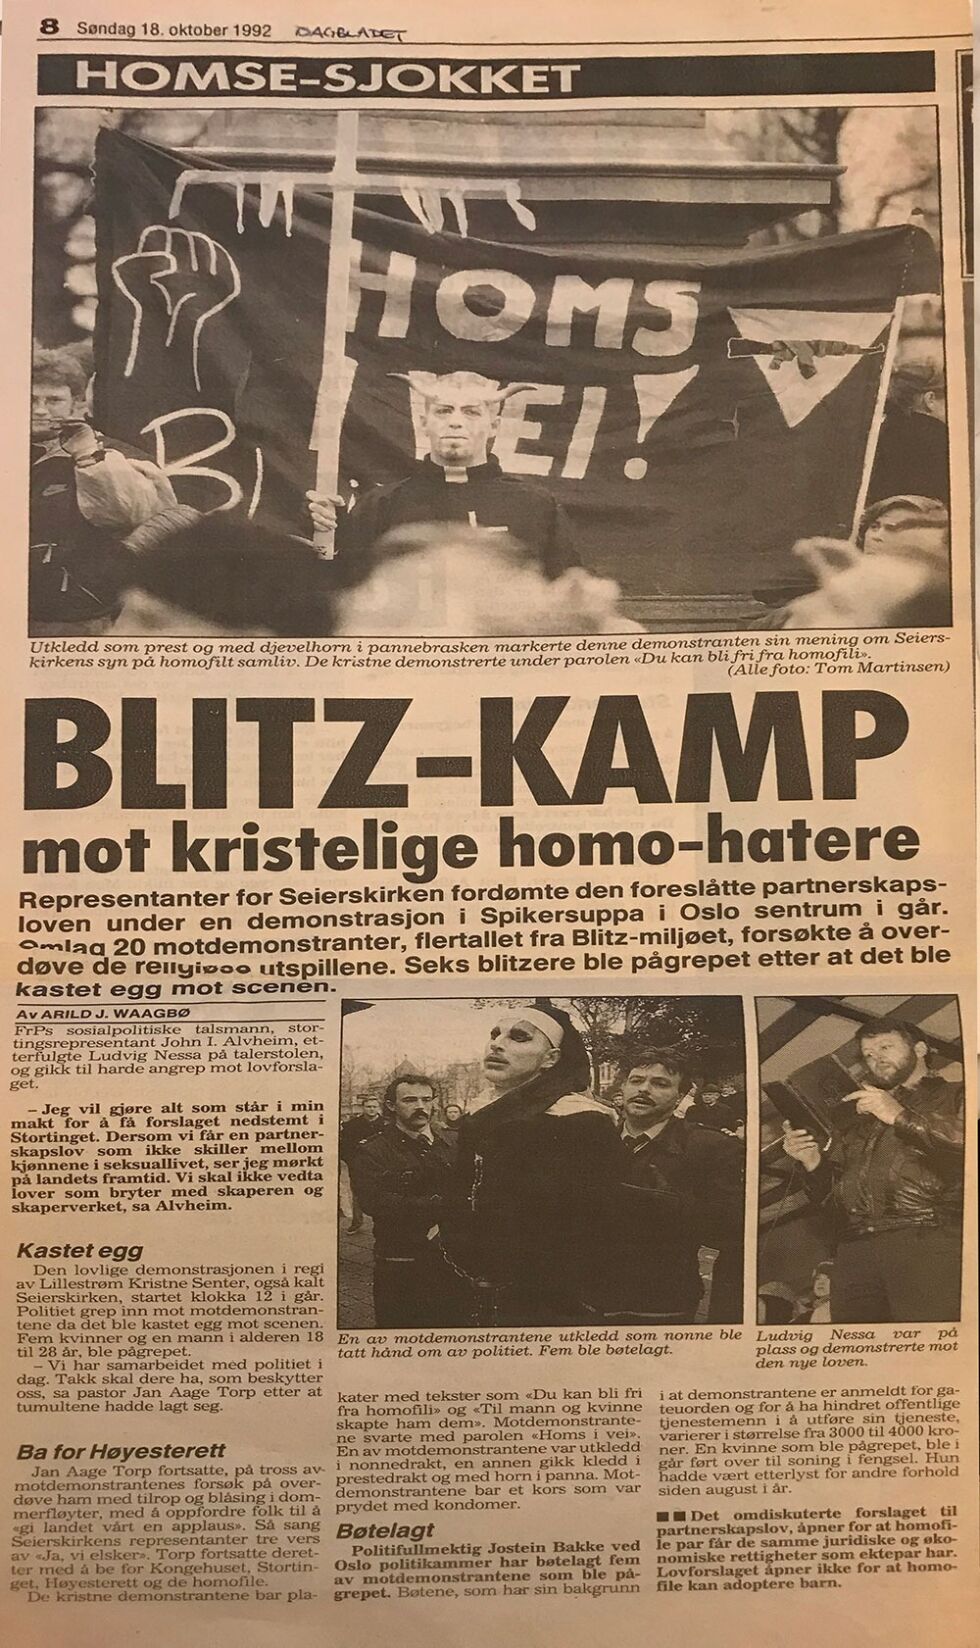 Oppslag i Dagbladet fra demonstrasjonen i 1992.